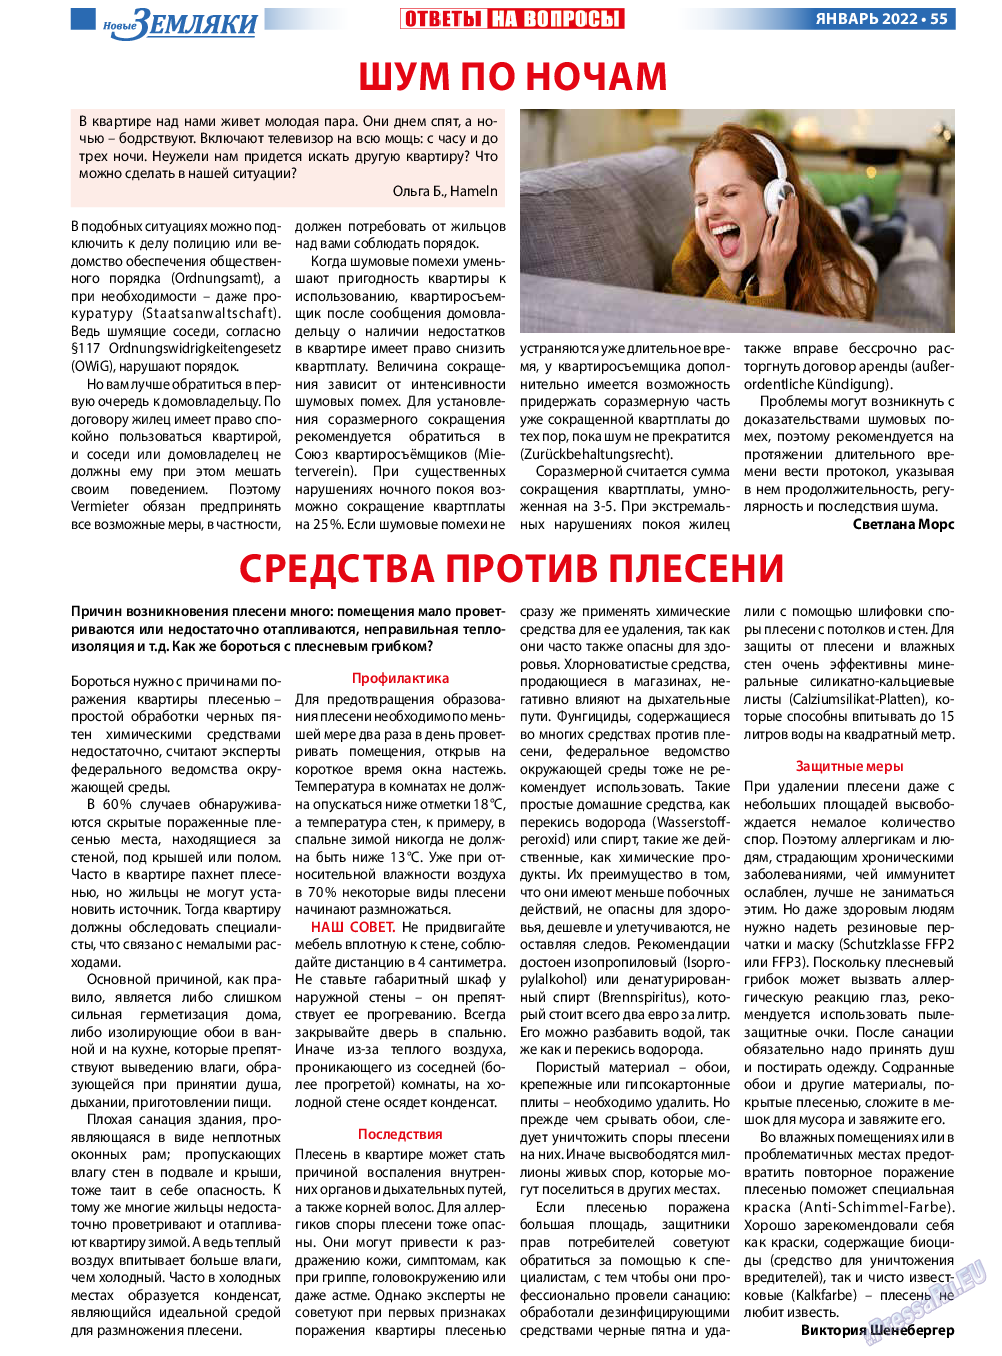 Новые Земляки, газета. 2022 №1 стр.55